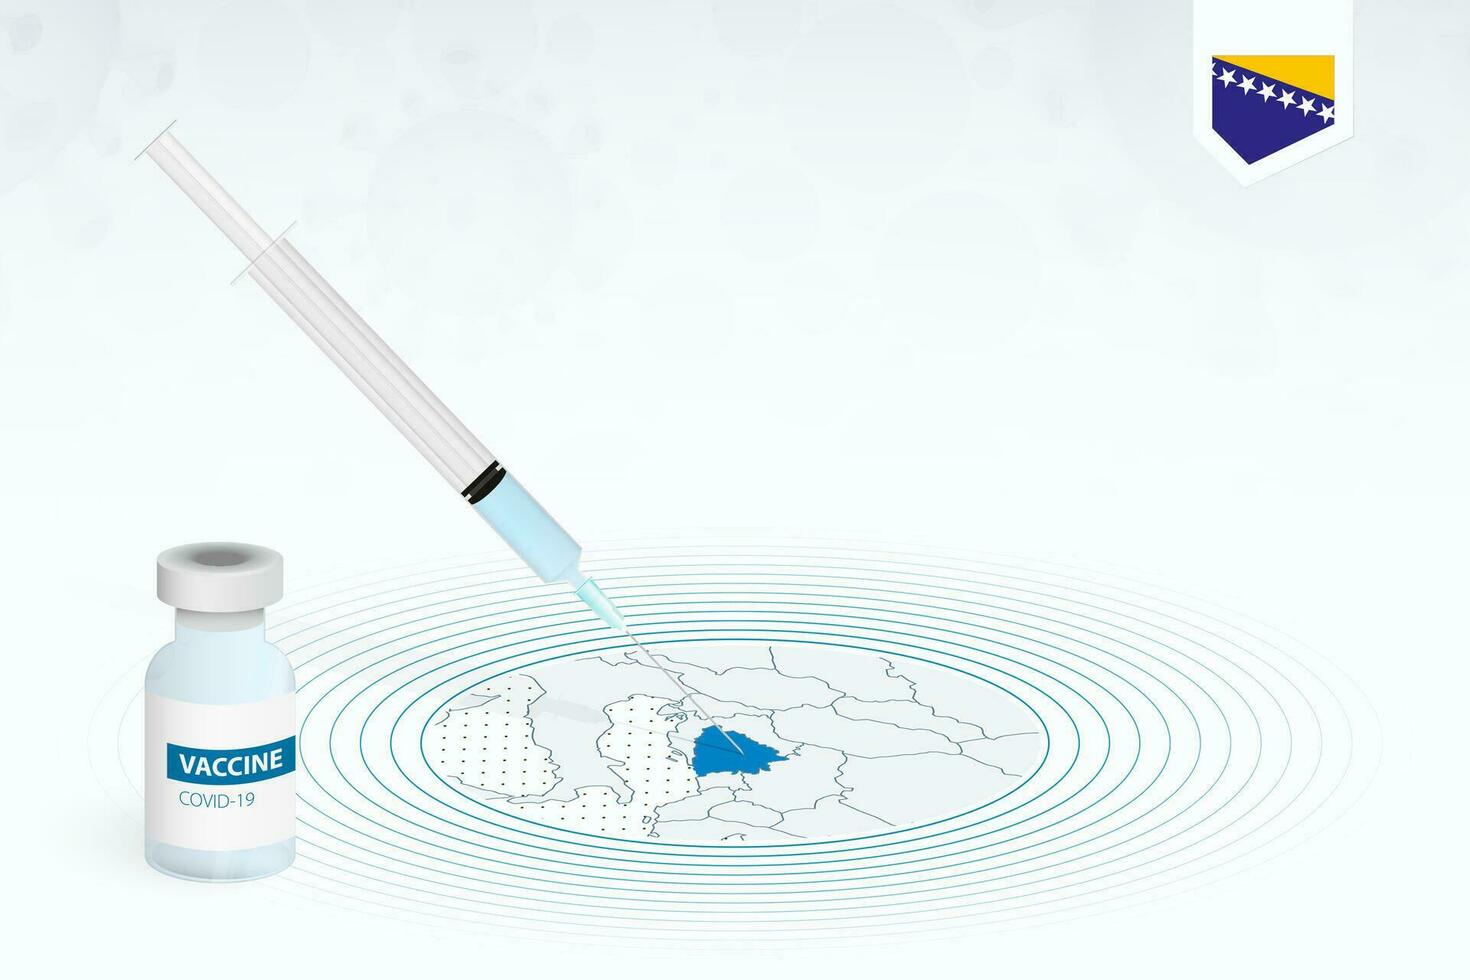 covid-19 vaccinazione nel bosnia e erzegovina, coronavirus vaccinazione illustrazione con vaccino bottiglia e siringa iniezione nel carta geografica di bosnia e erzegovina. vettore